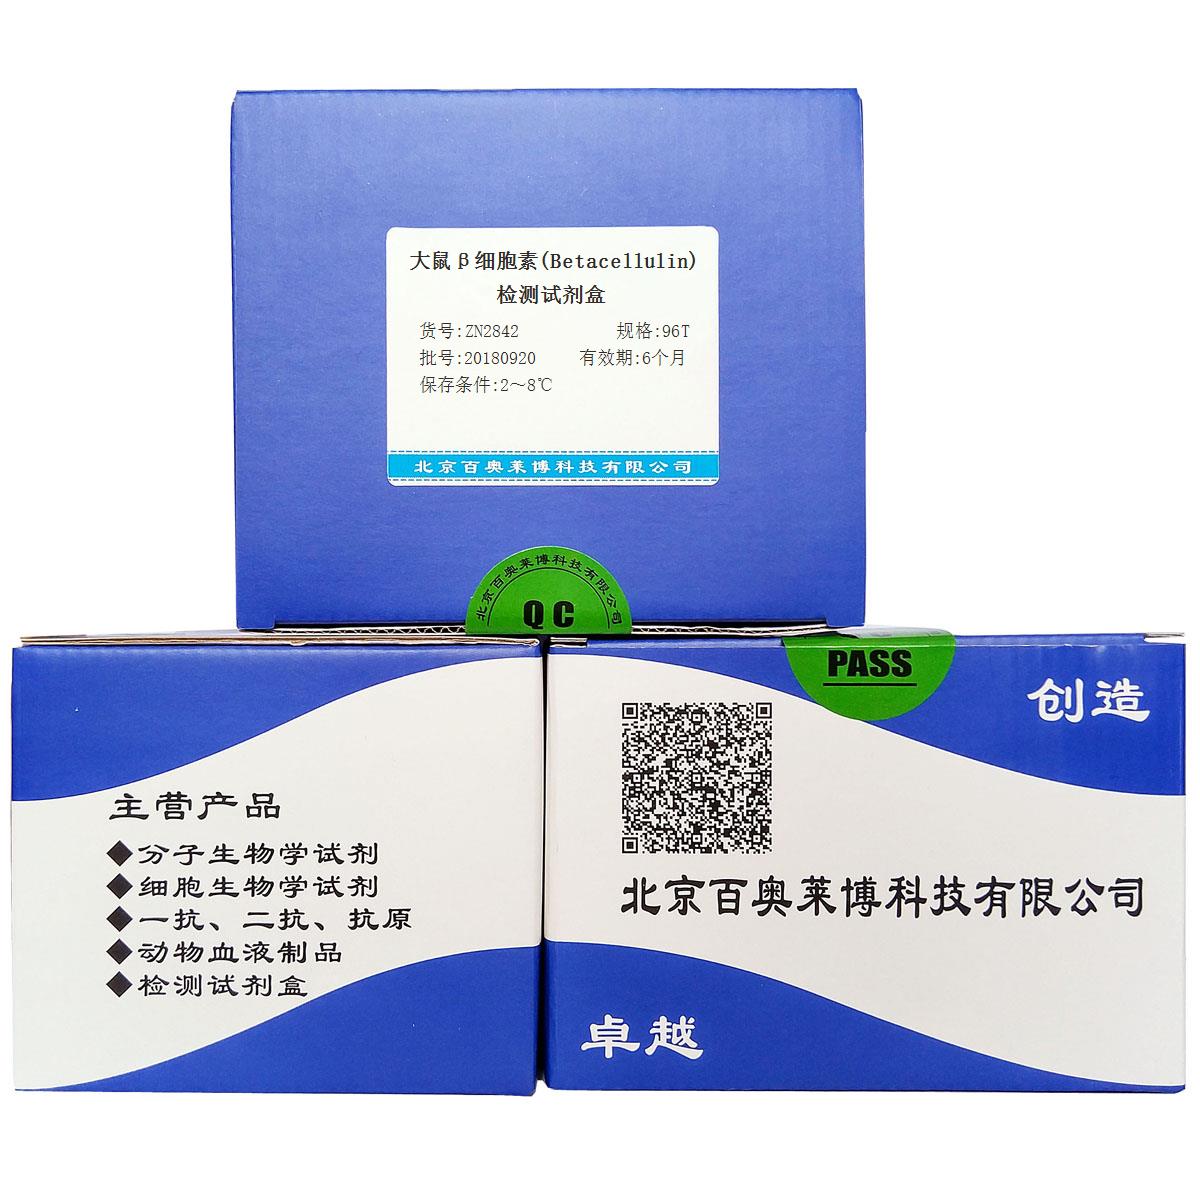 大鼠β细胞素(Betacellulin)检测试剂盒